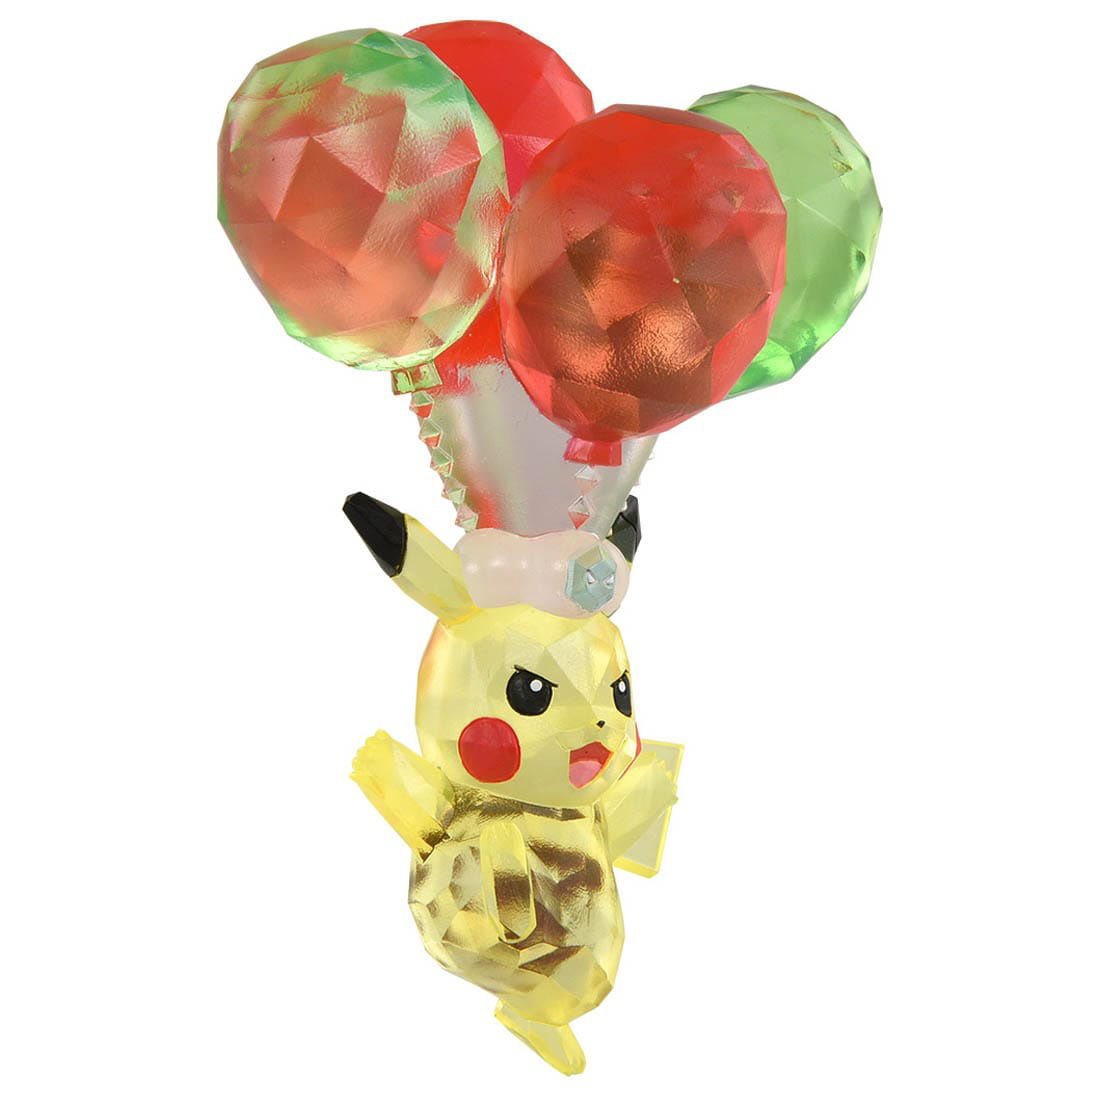 Pikachu Mini Balloon - 35 Inches Tall